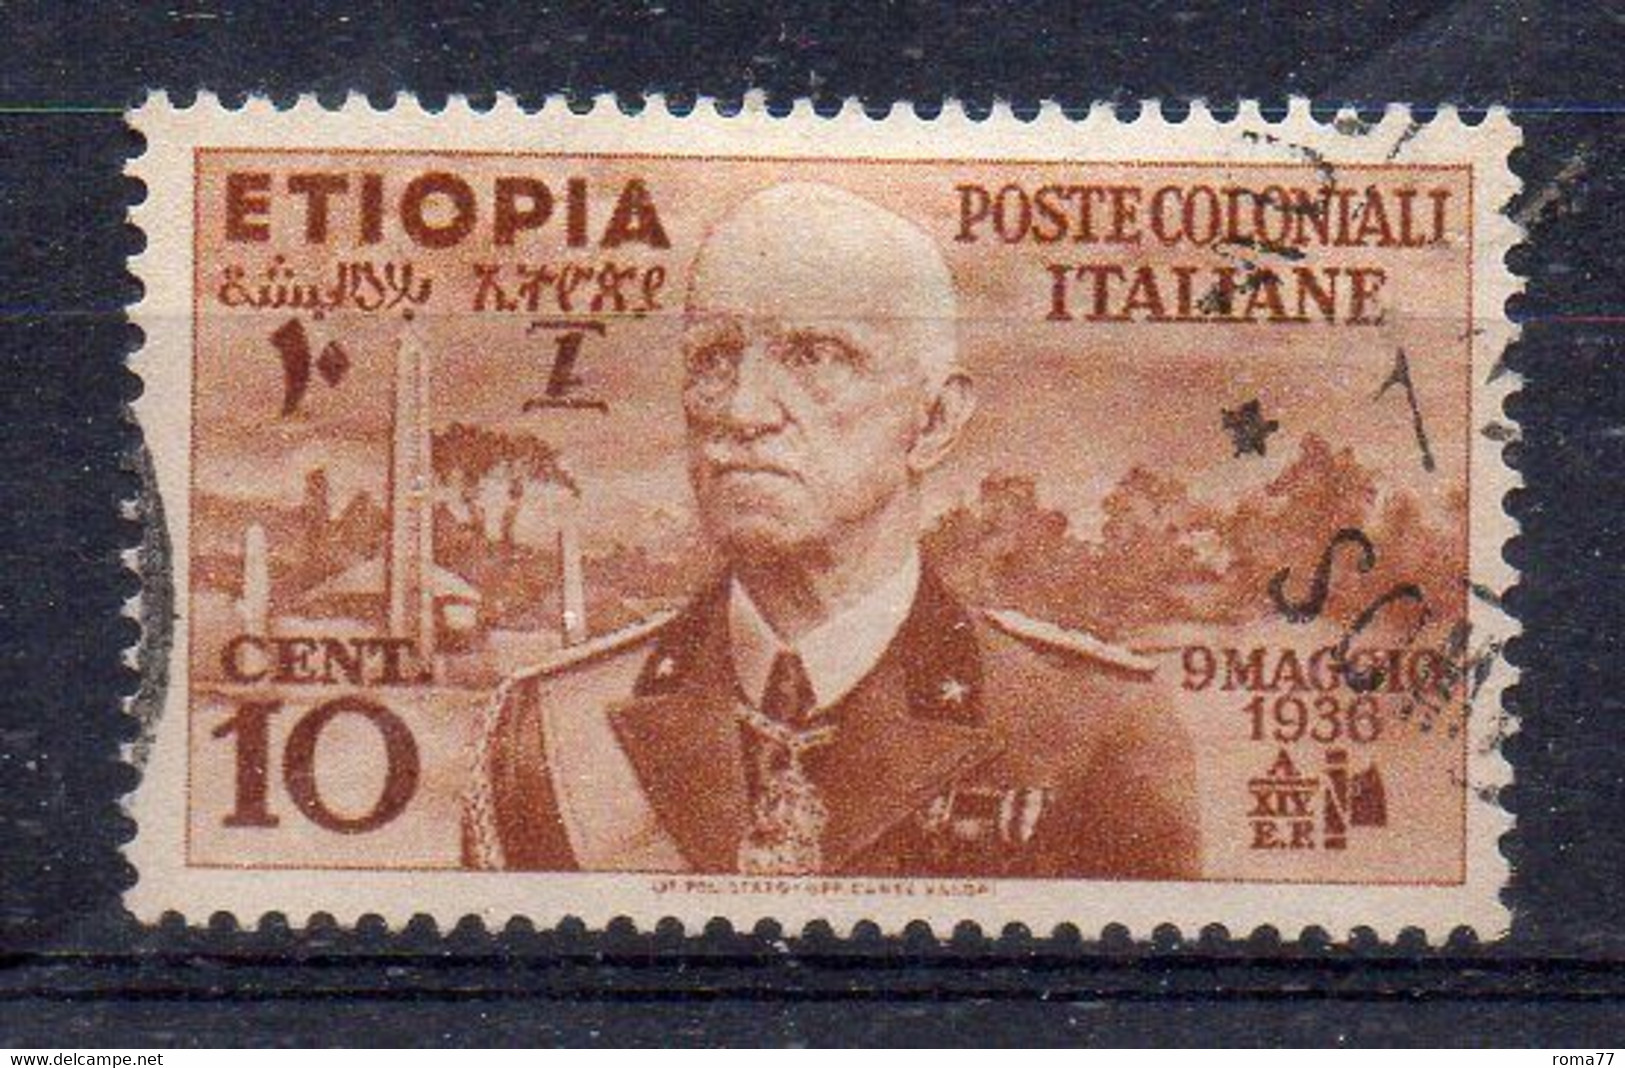 W2079 - ETIOPIA 1936 , Effigie 10 Cent N. 1 Usato. - Ethiopia